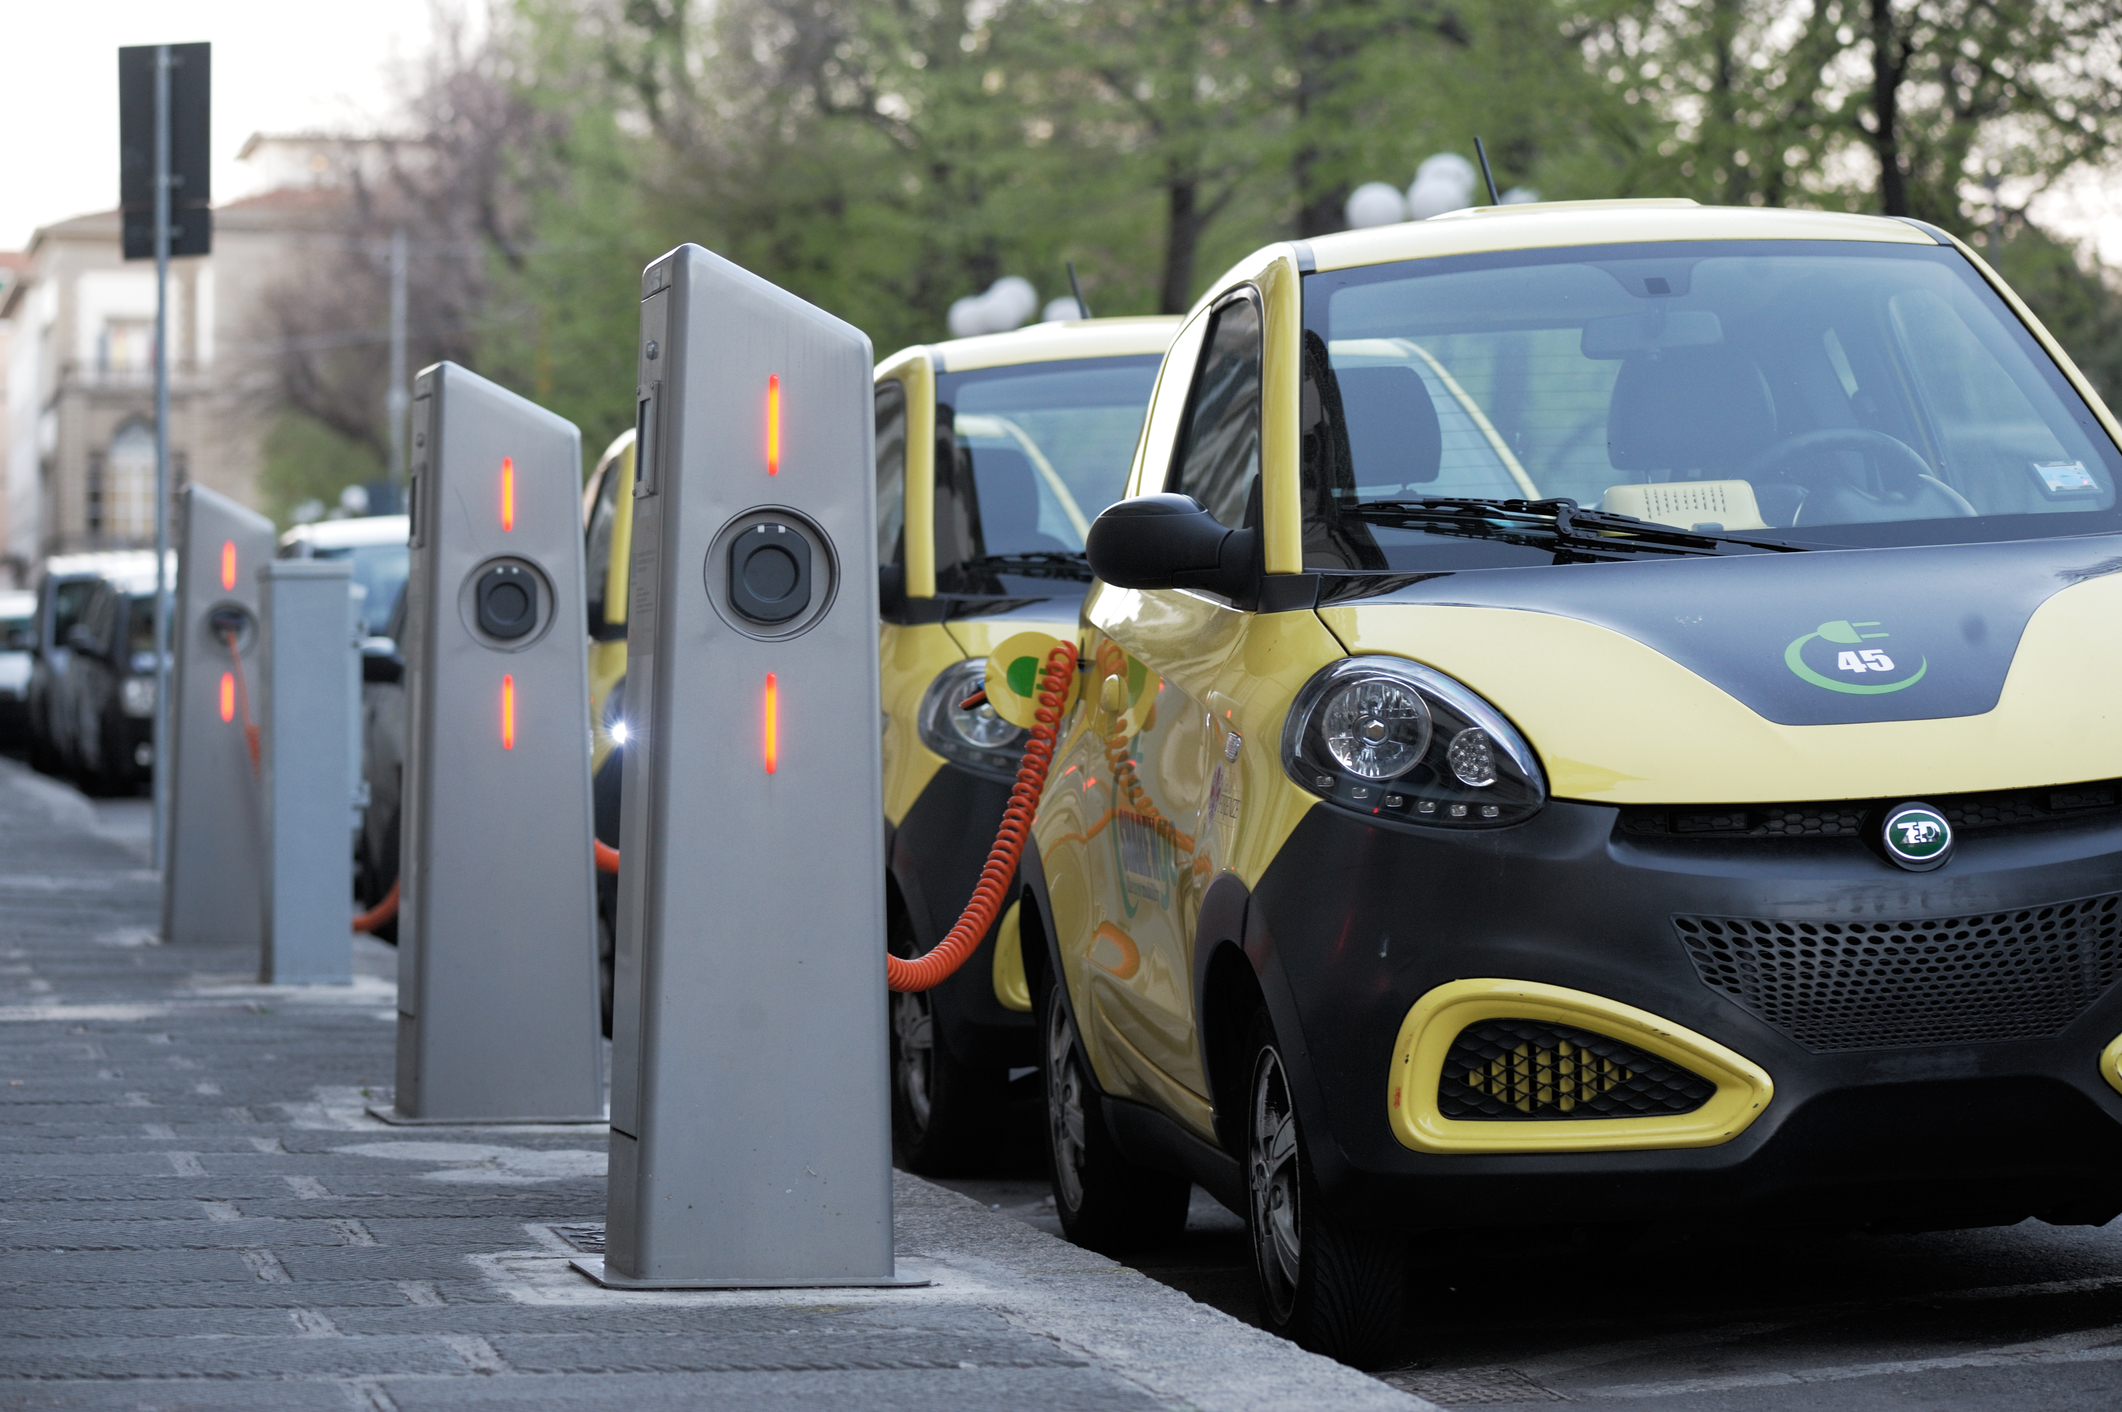 OE 2019. Governo mantém incentivos de 2500 euros à compra de veículos elétricos